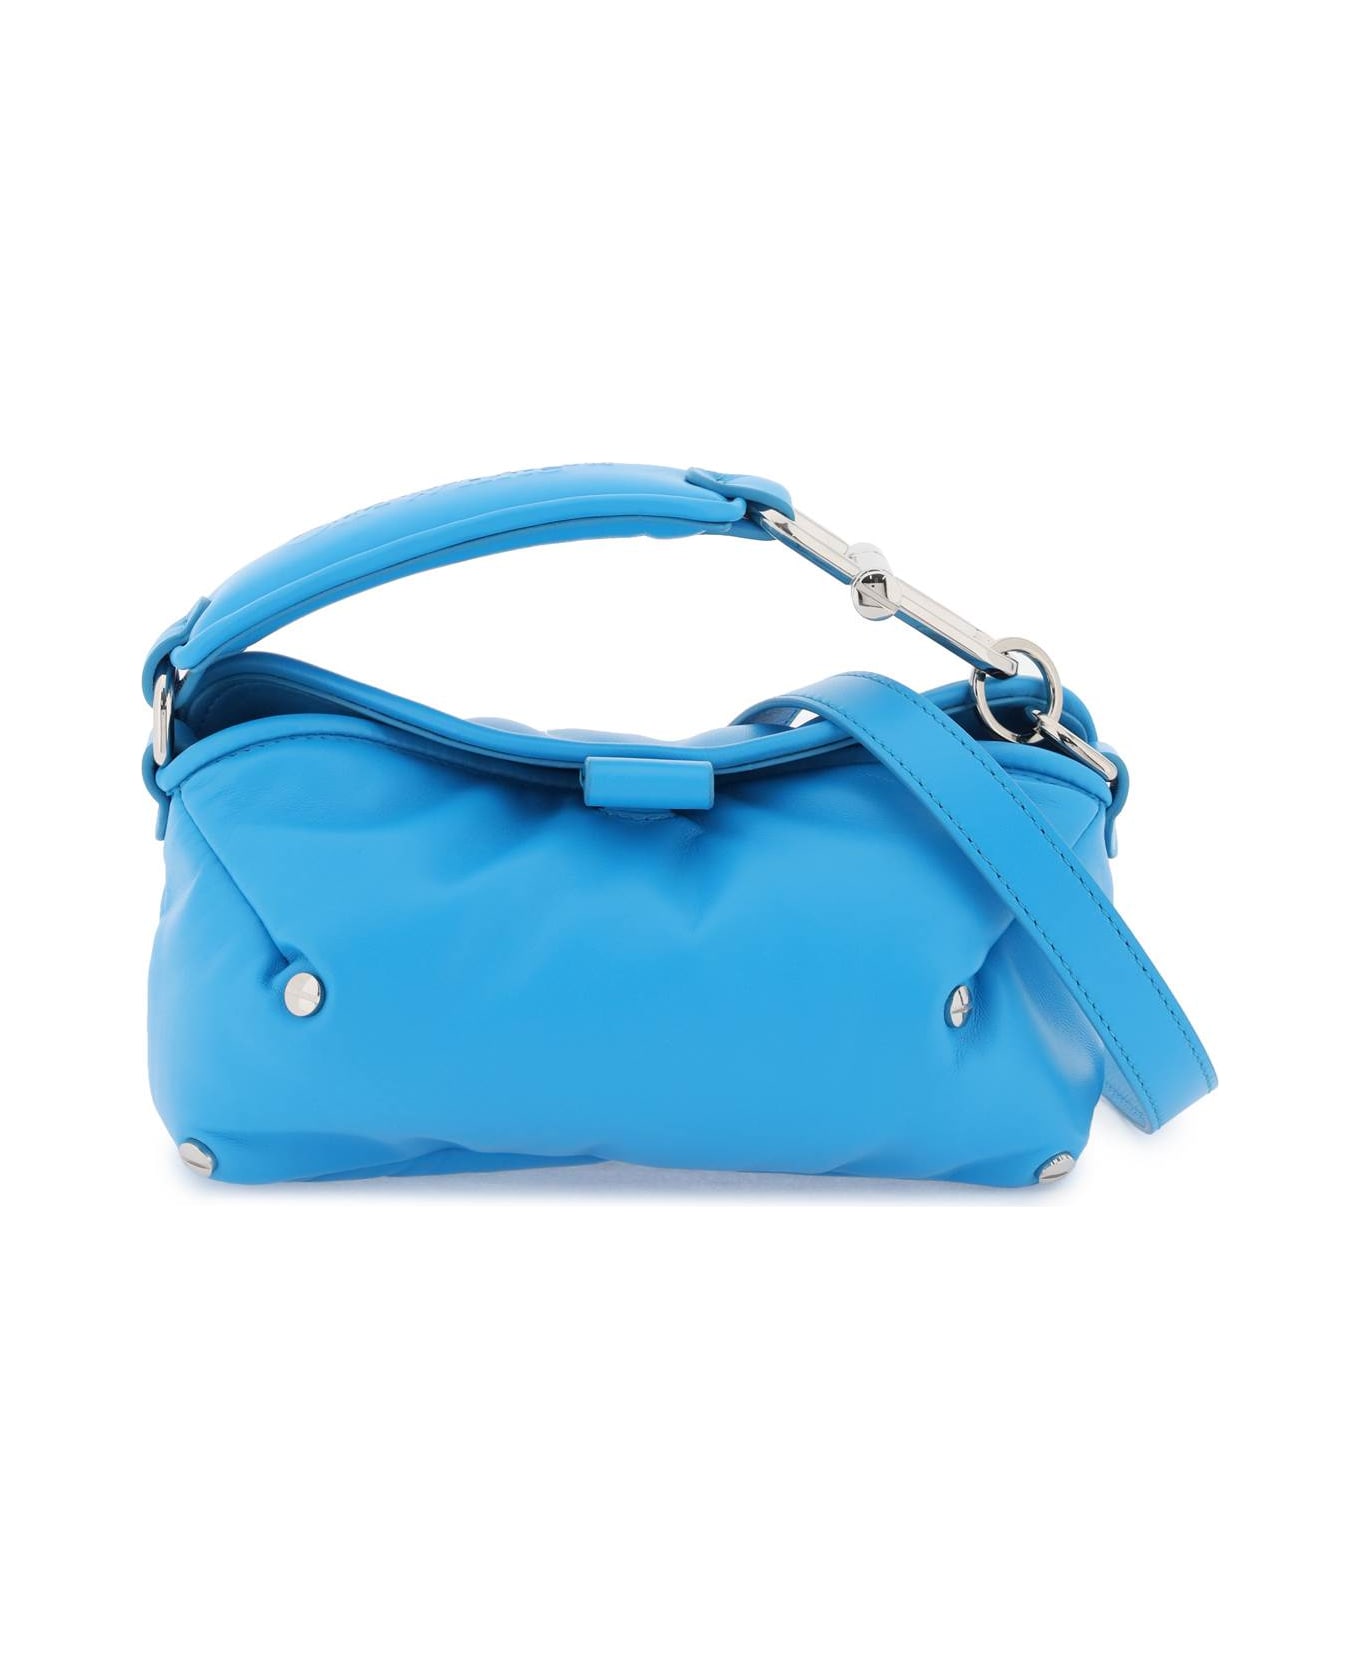 Off-White San Diego Handbag - LIGHT BLUE (Light blue)